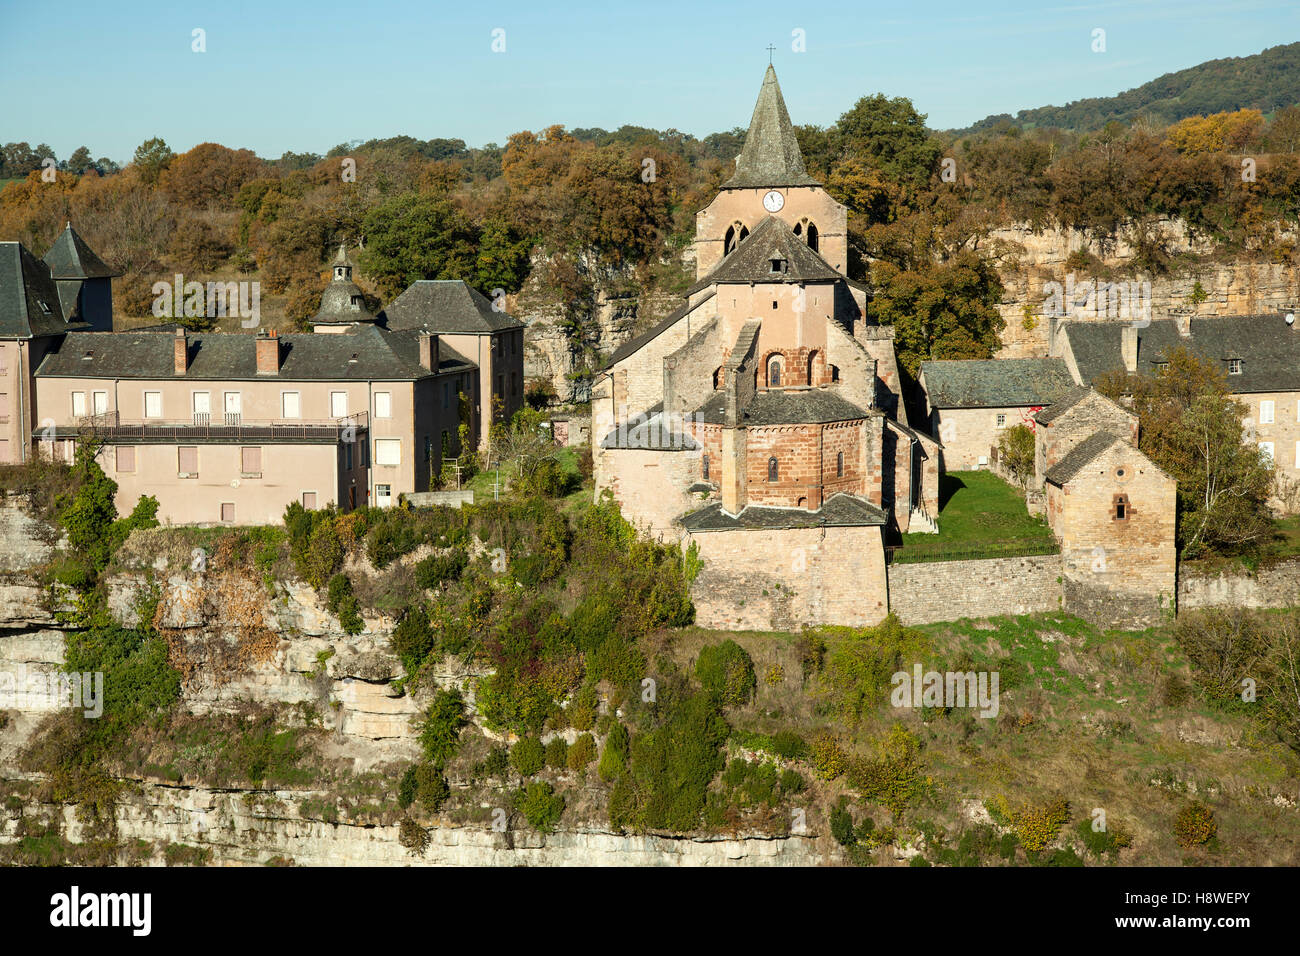 L'église romane St Faust à Bozouls, à l'automne (Aveyron - France). C'est une halte sur le chemin de Saint-Jacques de Compostelle (Espagne). Banque D'Images